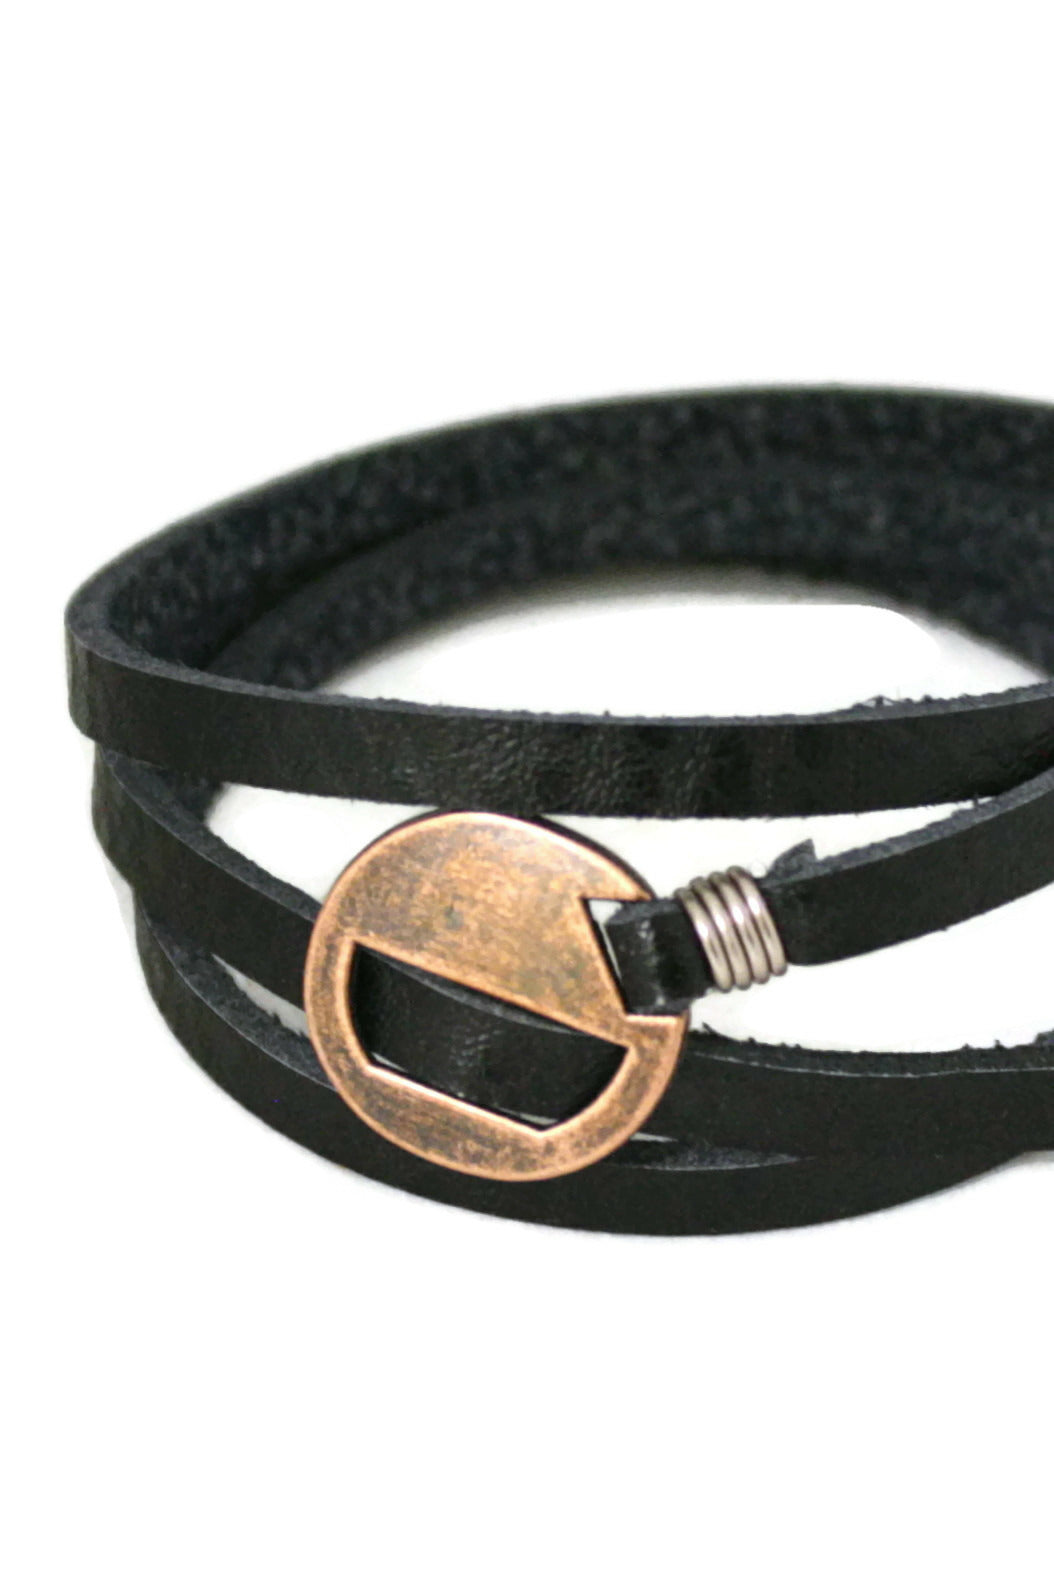 Wrapped Black Leather Essential Oil Bracelet- Adjustable-Diffuser Bracelet-Destination Oils